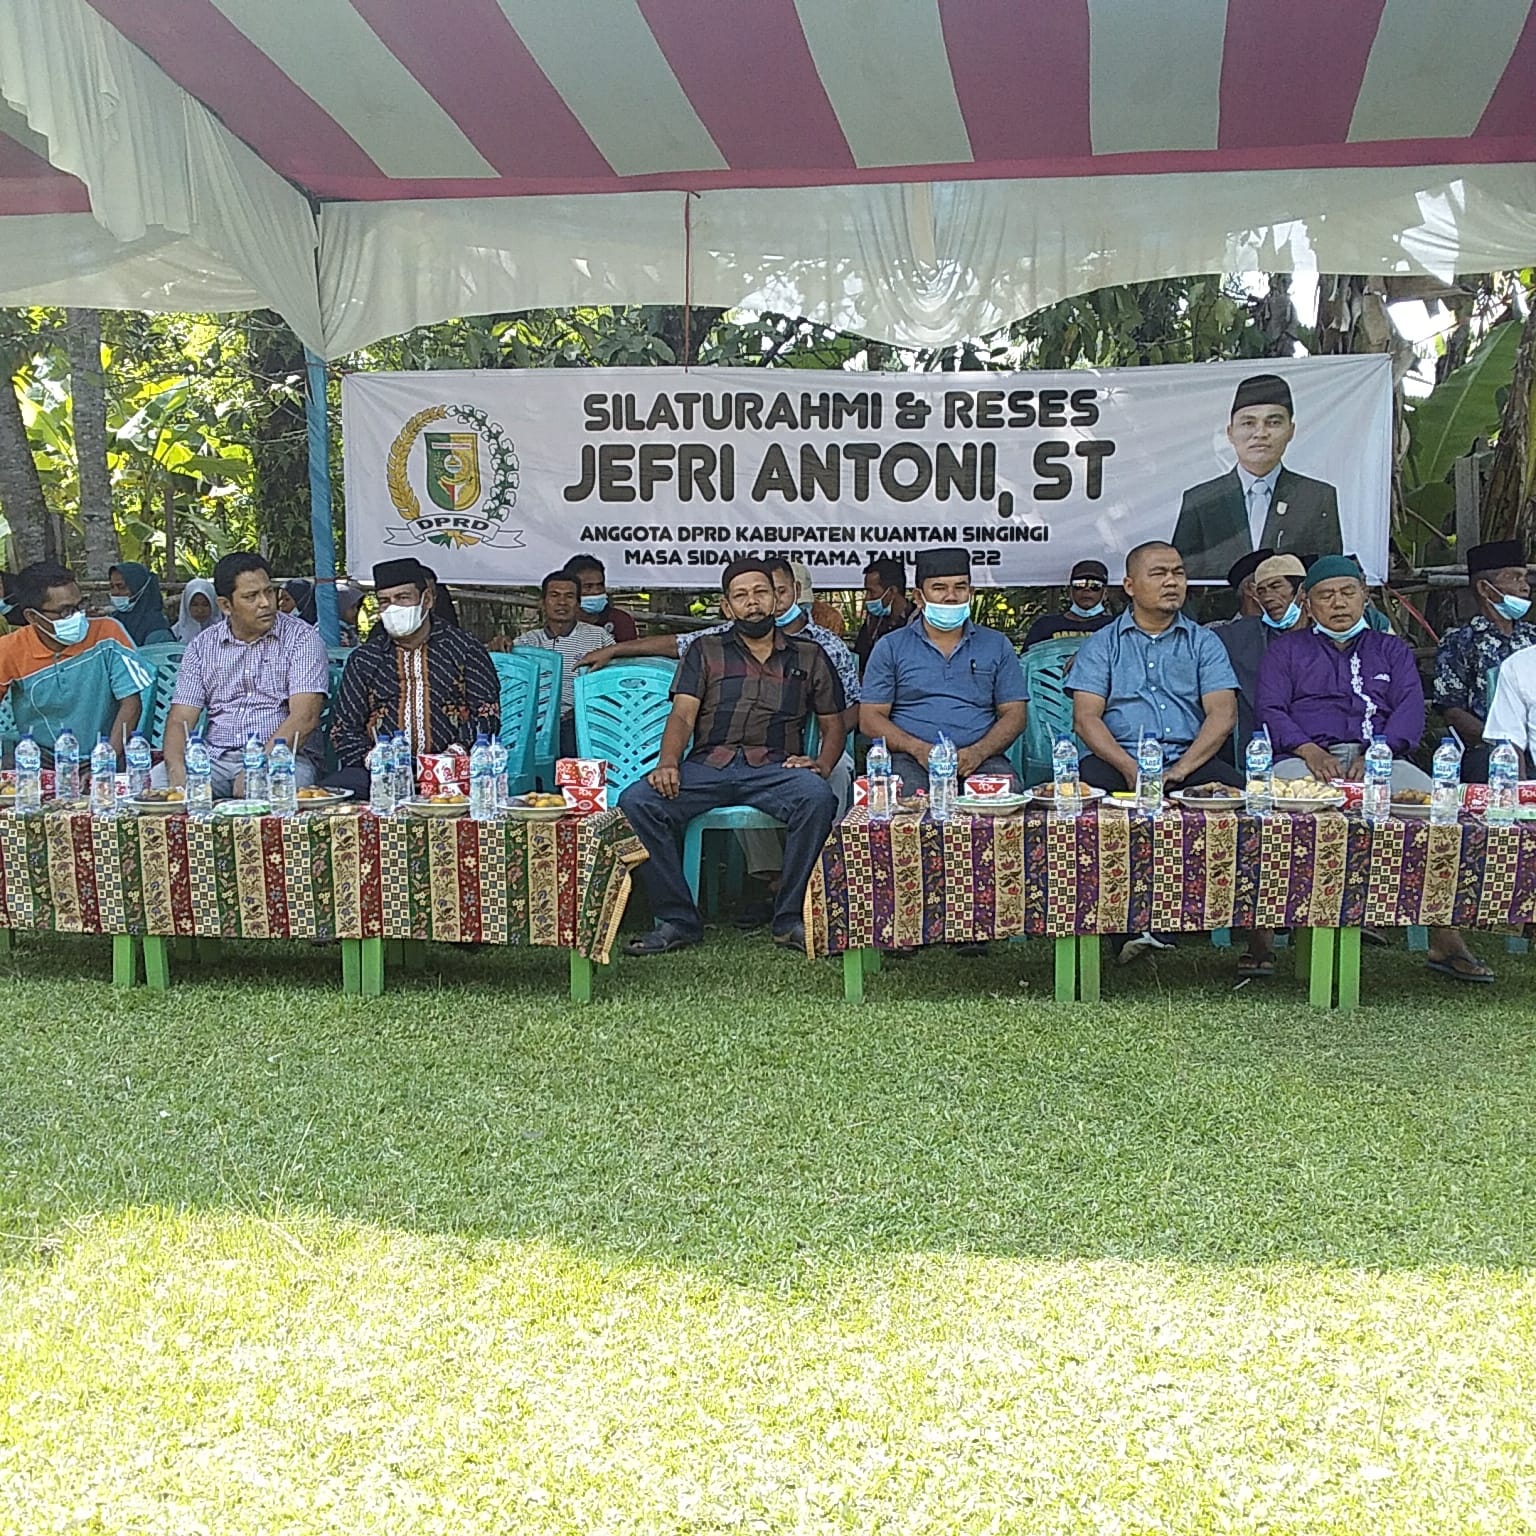 Lakukan Silaturahim, Tokoh Masyarakat Pulau Rengas Ucapkan Terima Kasih ke Jefri Antoni